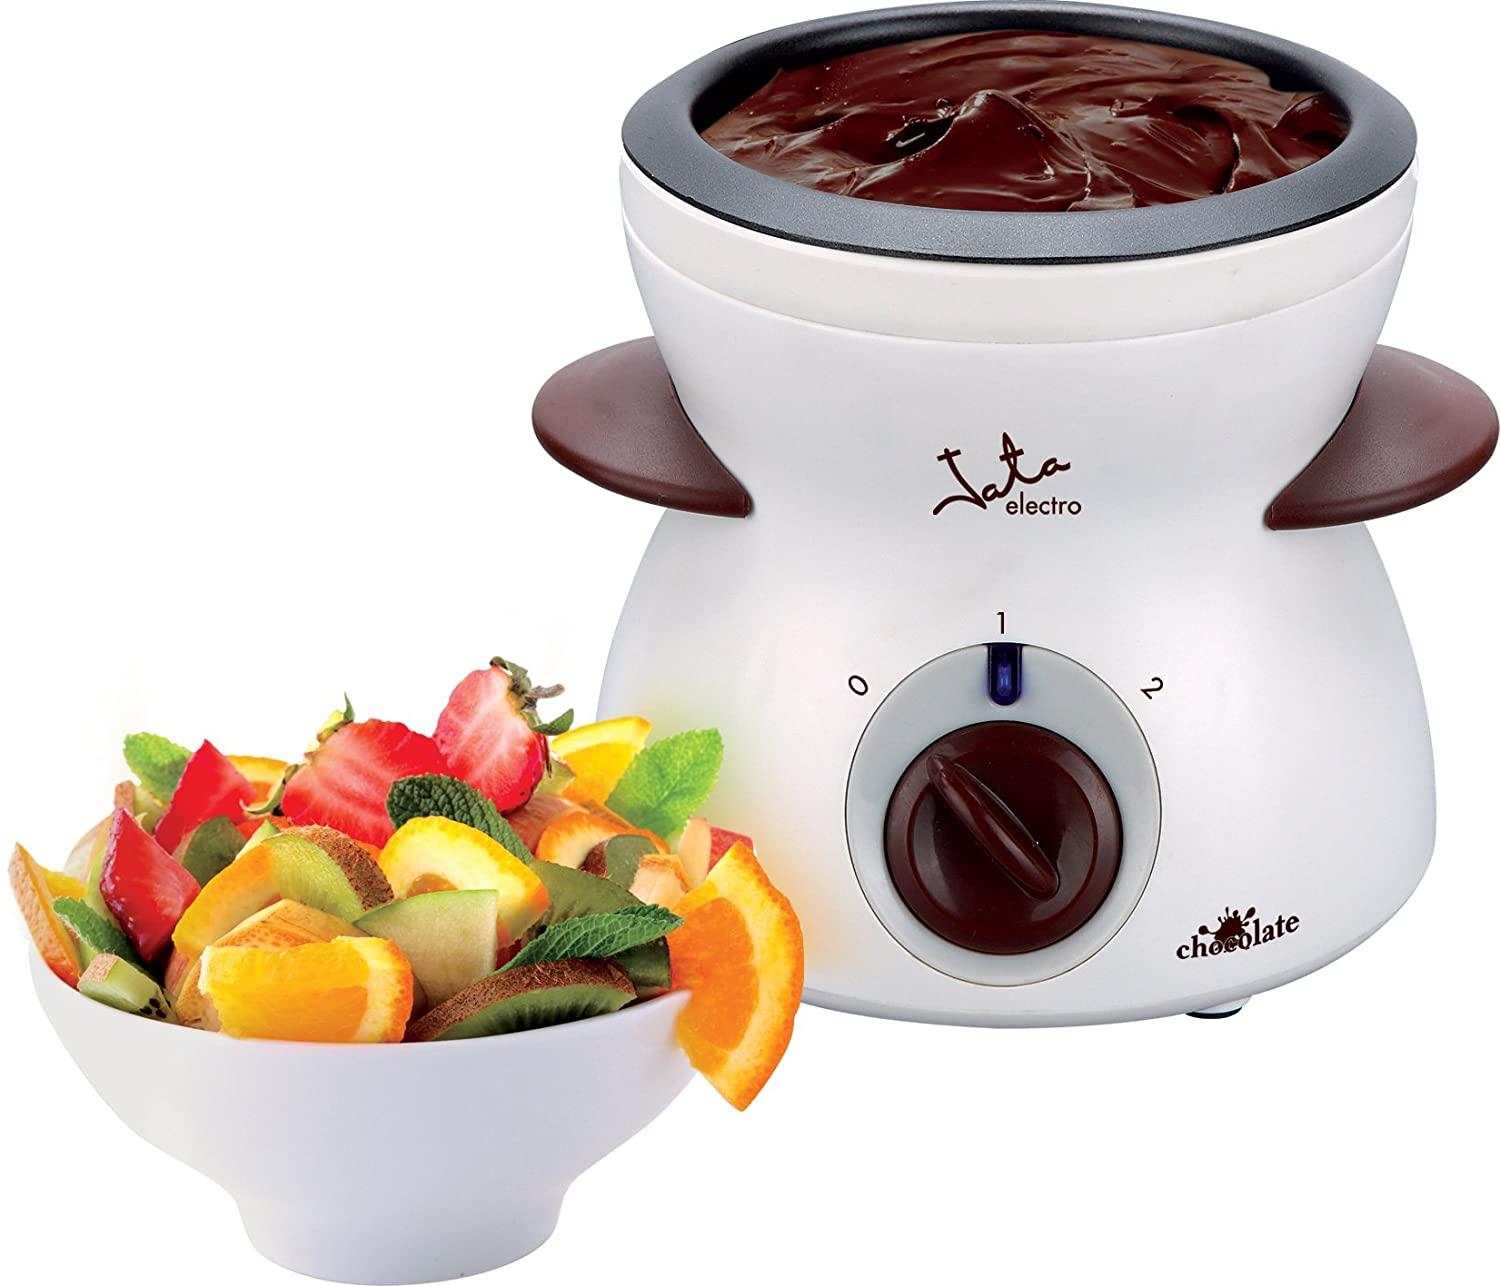 Fuente electrica de chocolate 0,3 litros 25W fondue recubrimiento antiadherente 